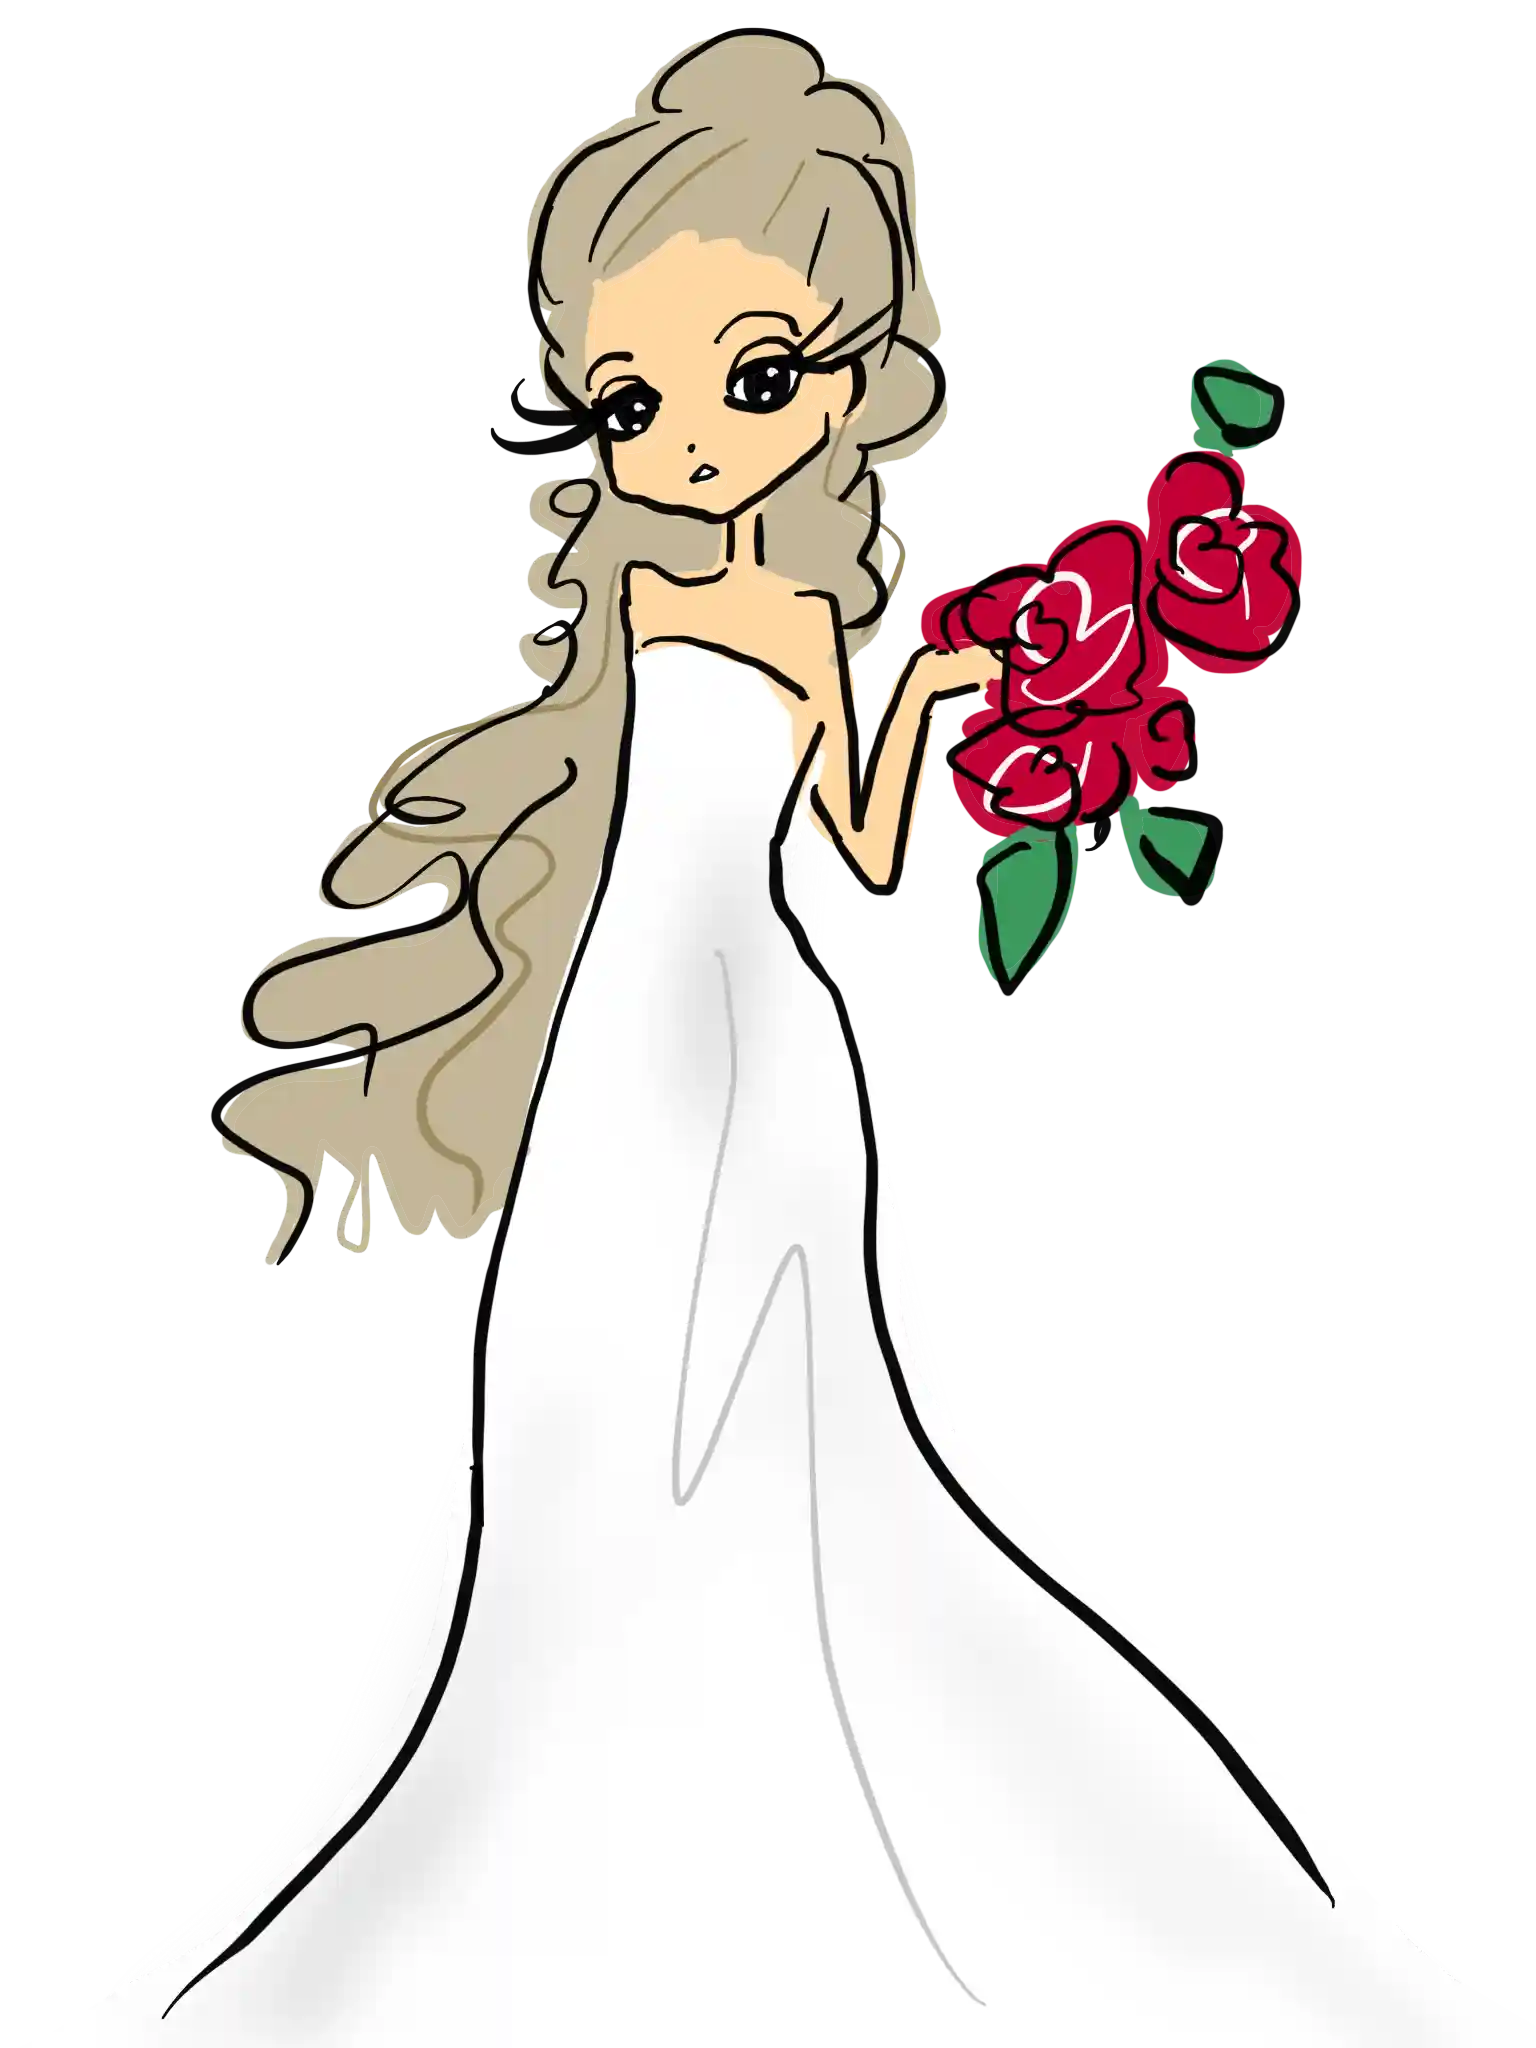 おしゃれなウェディングドレスを着た花嫁のイラスト 無料素材 おのちあきファッションイラスト ガールズイラスト